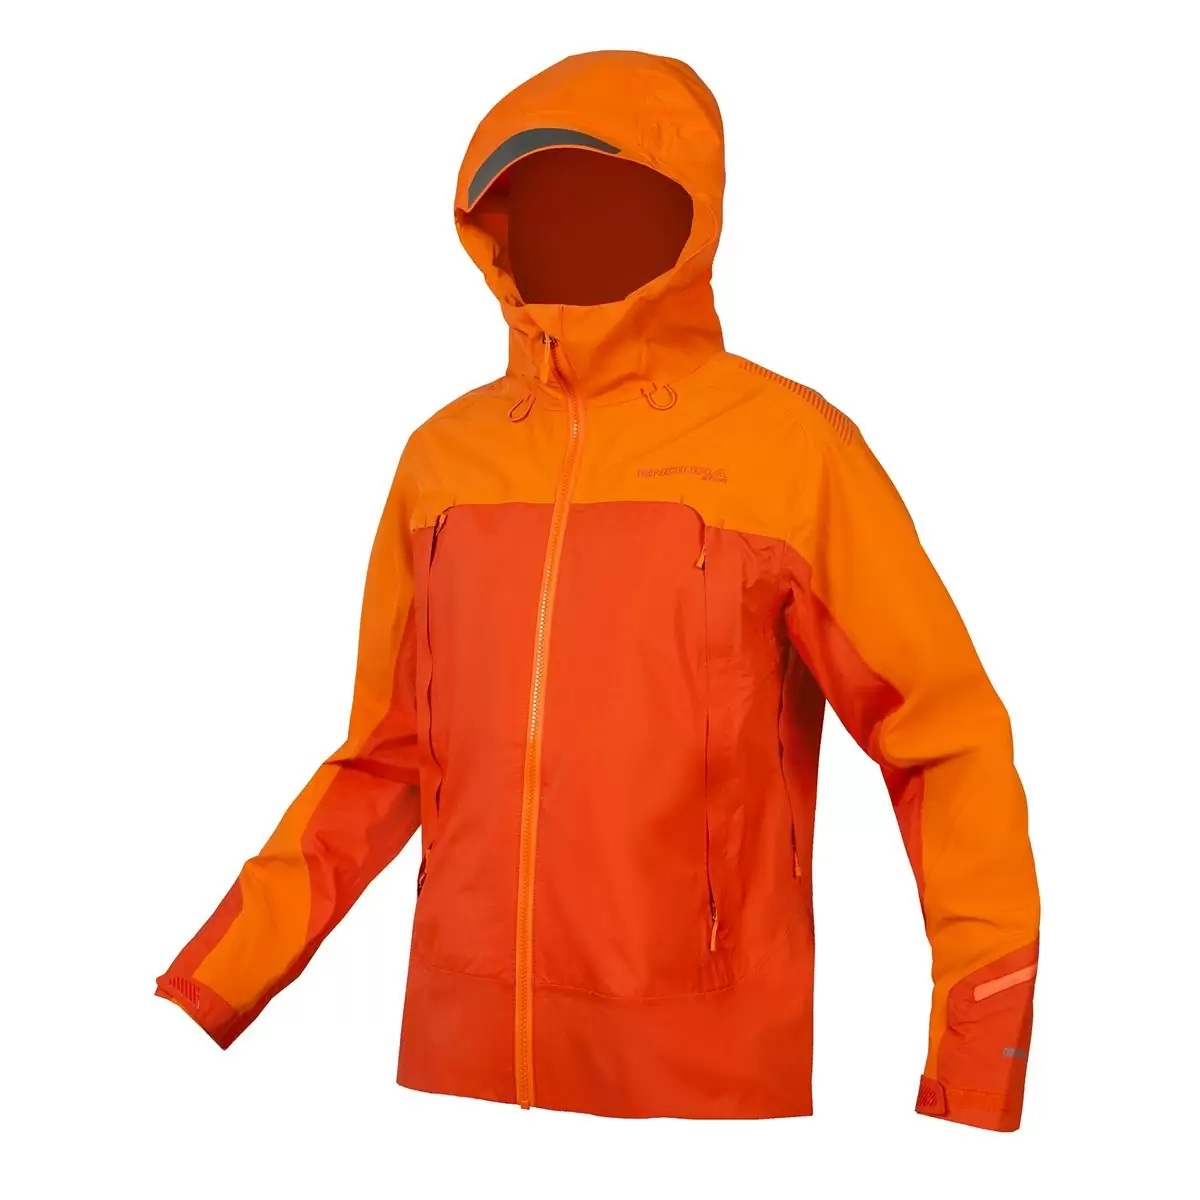 Comprar chaqueta de advertencia de ventilación en línea